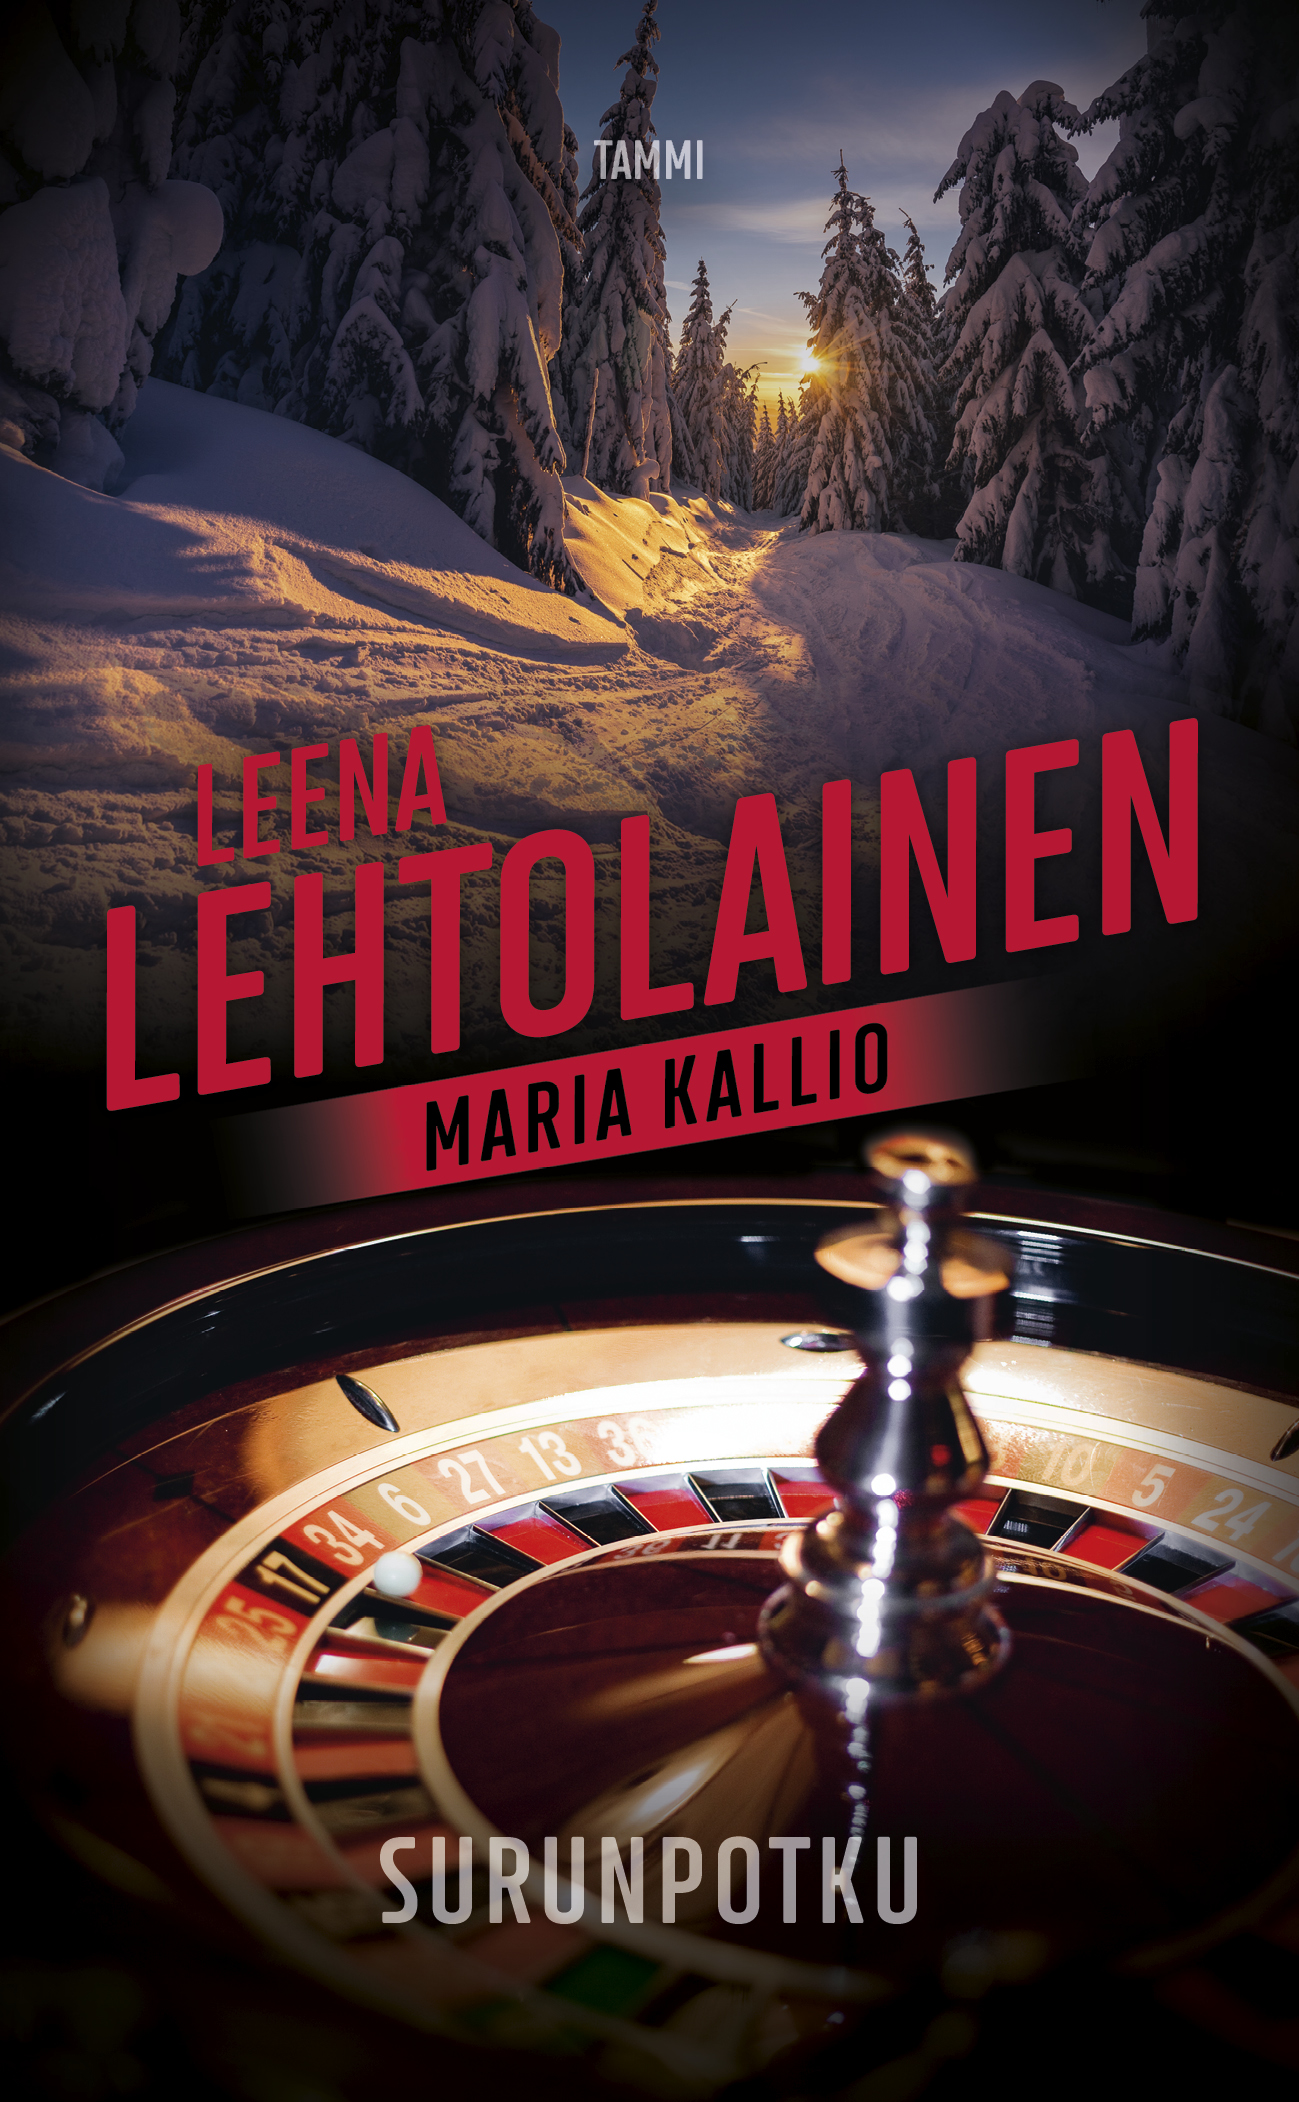 Lehtolainen, Leena - Surunpotku: Maria Kallio 13, ebook